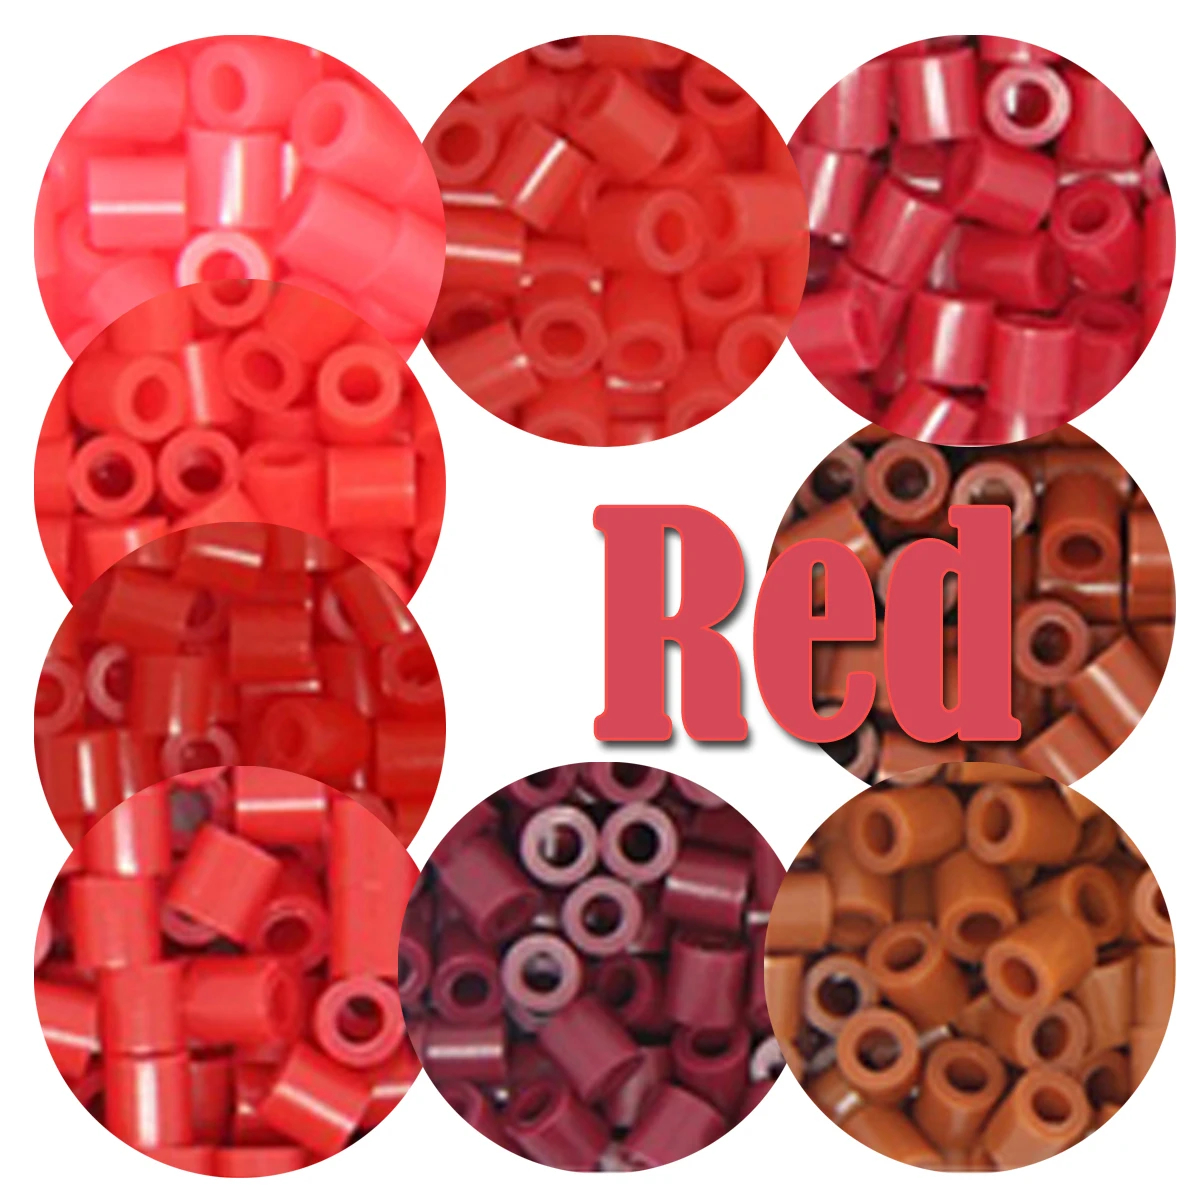 Rode Kleur 5Mm 1000Pcs Pixel Art Puzzel Hama Kralen Voor Kids Iron Zekering Kralen Diy Puzzels Hoge Kwaliteit gift Kinderen Speelgoed